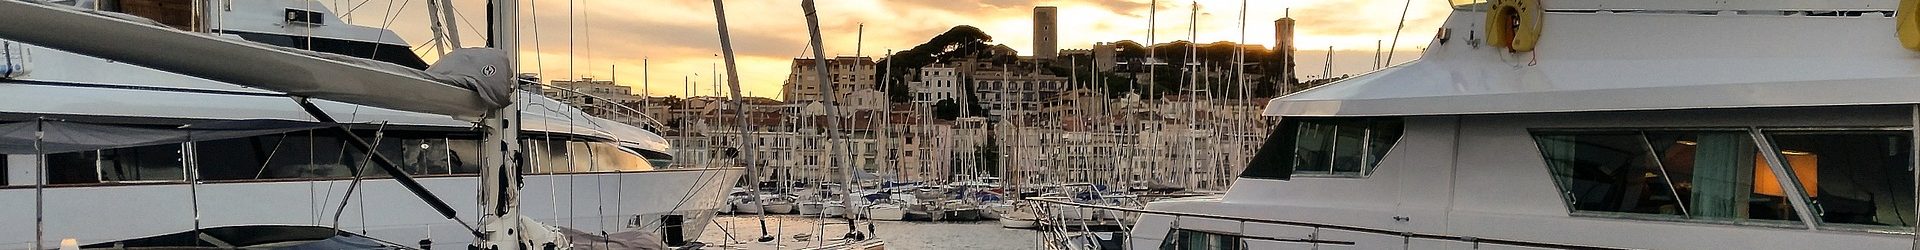 Les marchés provençaux et brocantes à Cannes